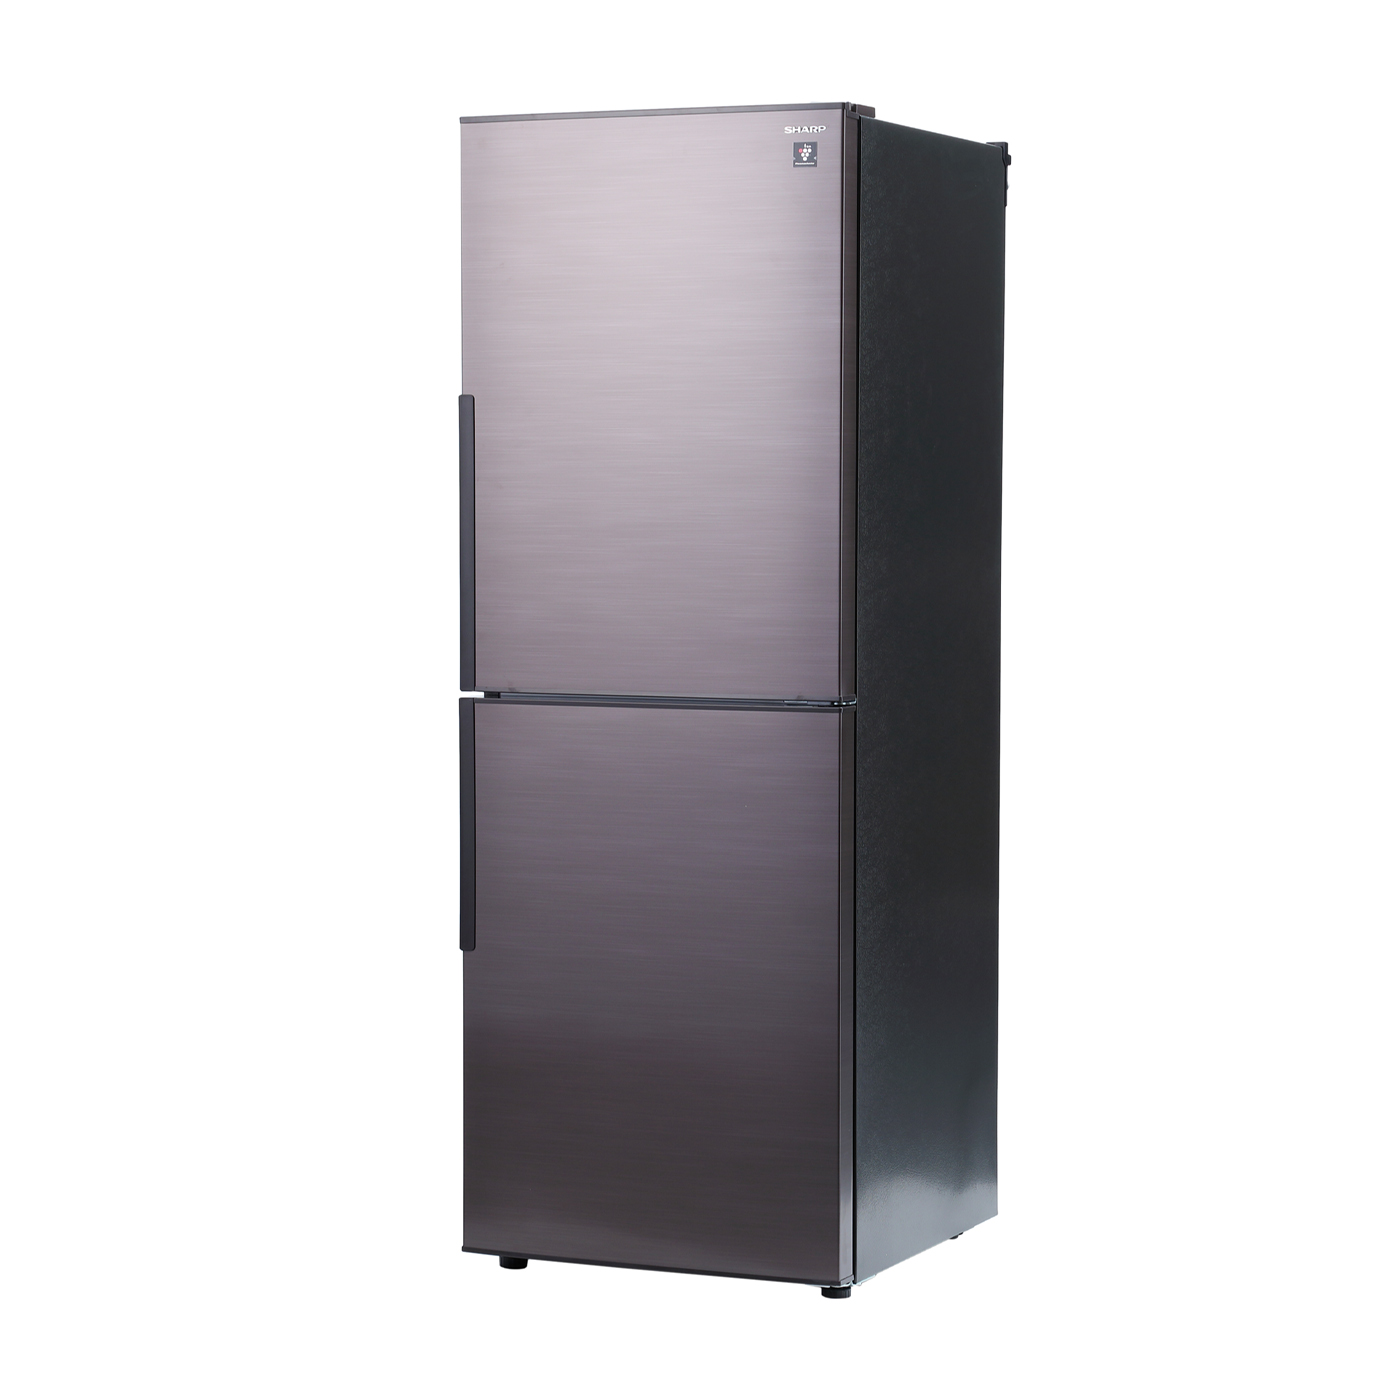 アイリスオーヤマ 冷蔵庫 153L 幅50cm 冷凍室 60L 最高水準の冷凍機能 静音設計 右開き IRSN-15B-W ホワイト